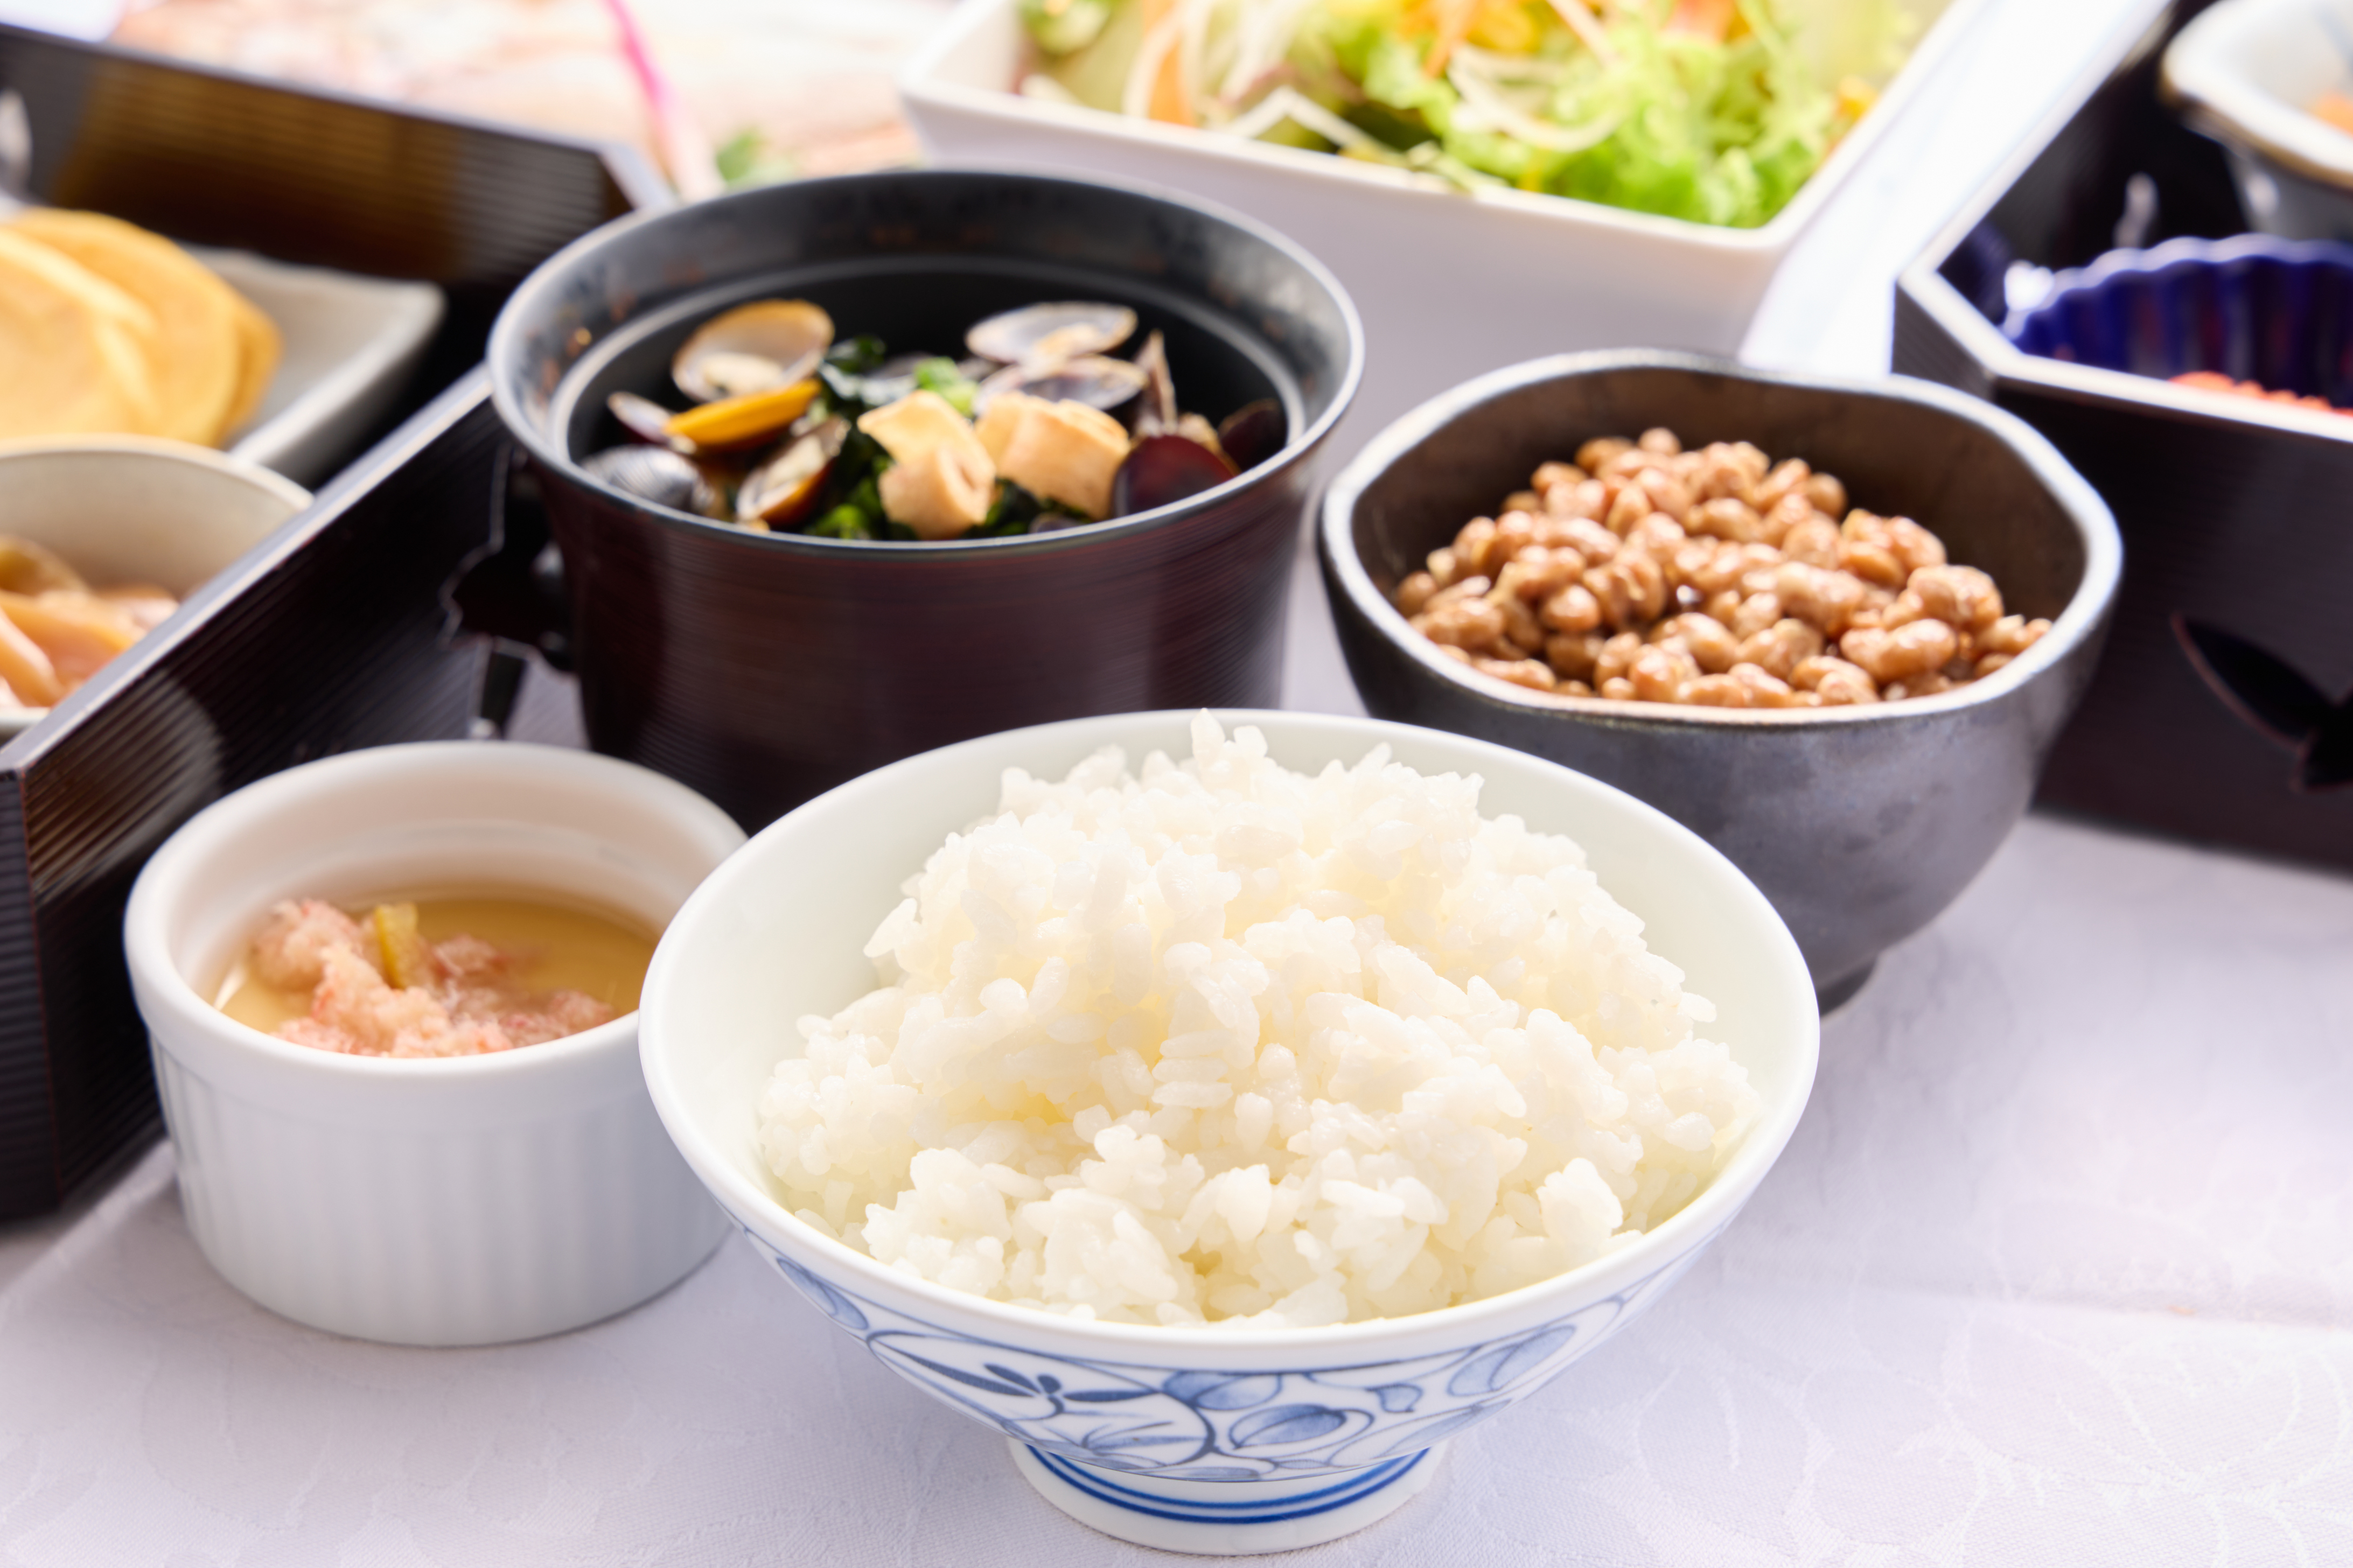 鳥取県産のお米を日替わりで3種ご用意しております。地元食材のご飯のお供と一緒にお召し上がりください。